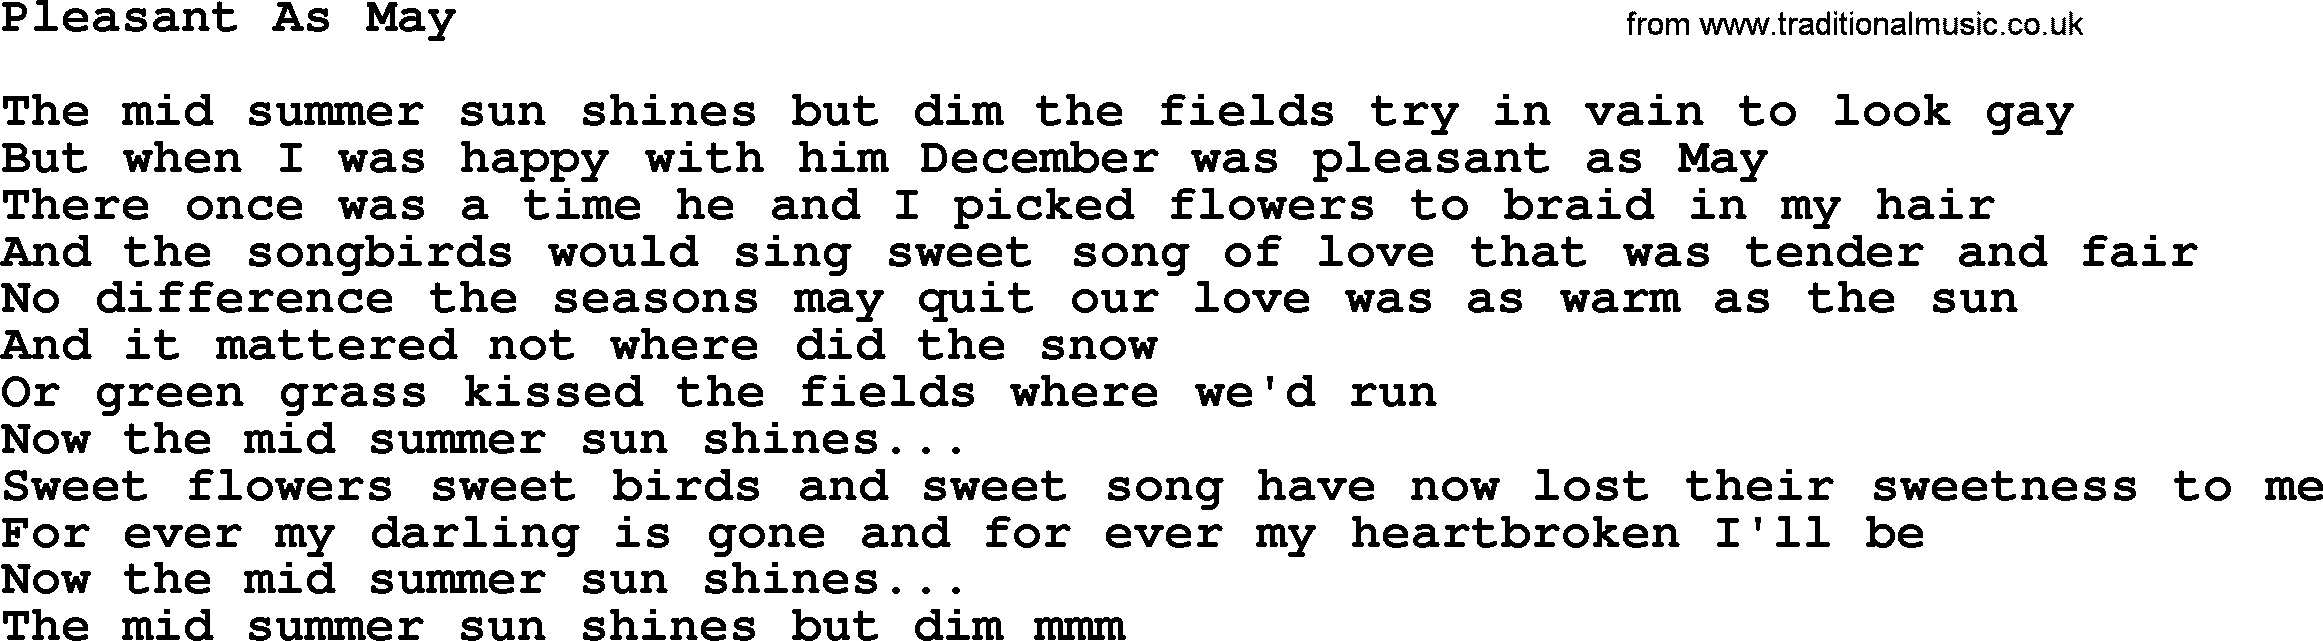 Dolly Parton song Pleasant As May.txt lyrics